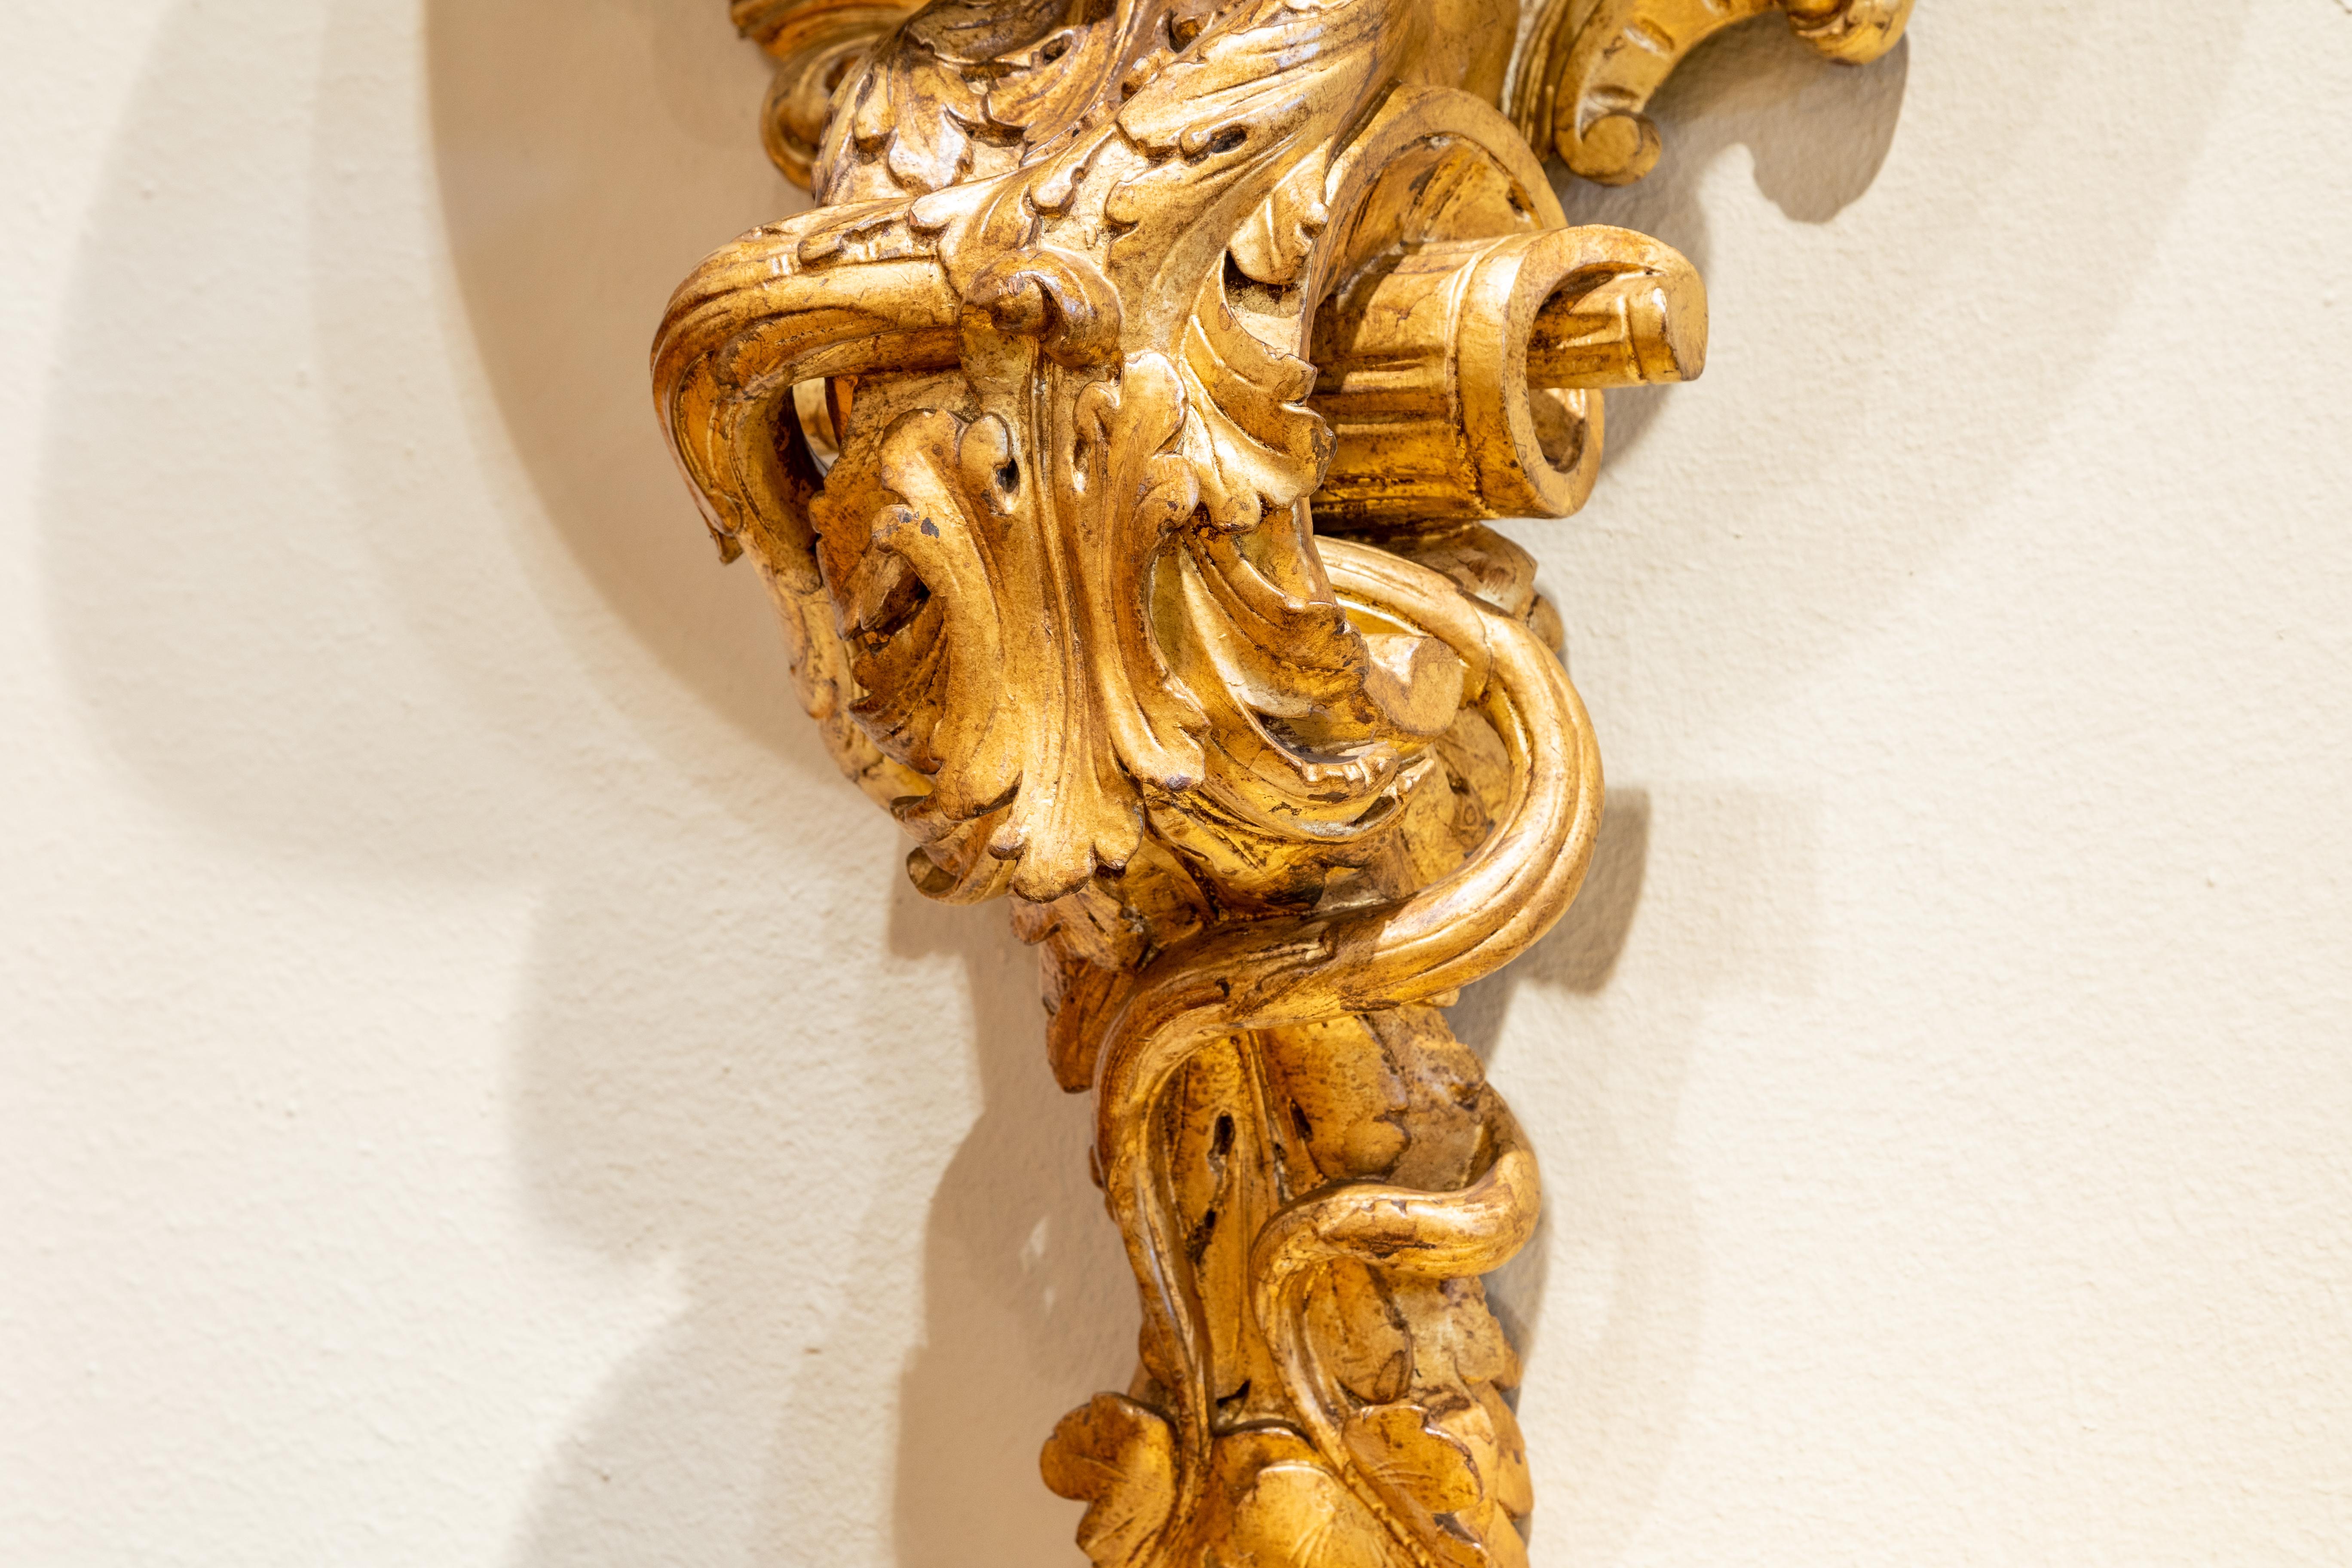 Grande paire de consoles murales italiennes du XIXe siècle en bois doré sculpté de chérubins. Sculptée à la main avec un grand chérubin soutenant l'étagère supérieure. Sculptée et dorée de manière très élaborée.